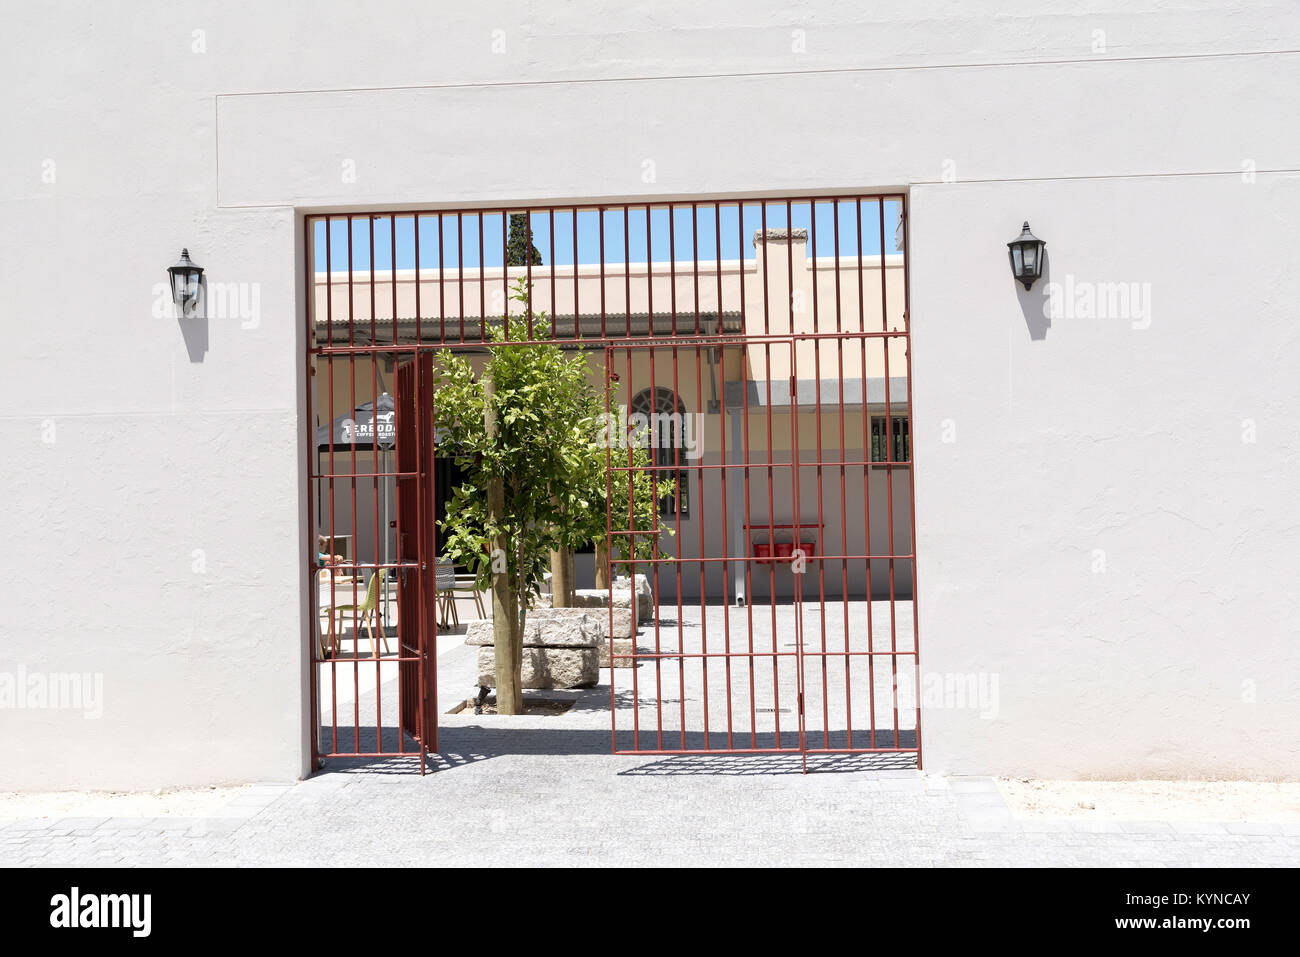 Ancienne prison à Paarl Western Cape Afrique du Sud. Décembre 2017. La porte principale dans l'ancienne prison maintenant l'entrée dans un restaurant. Banque D'Images